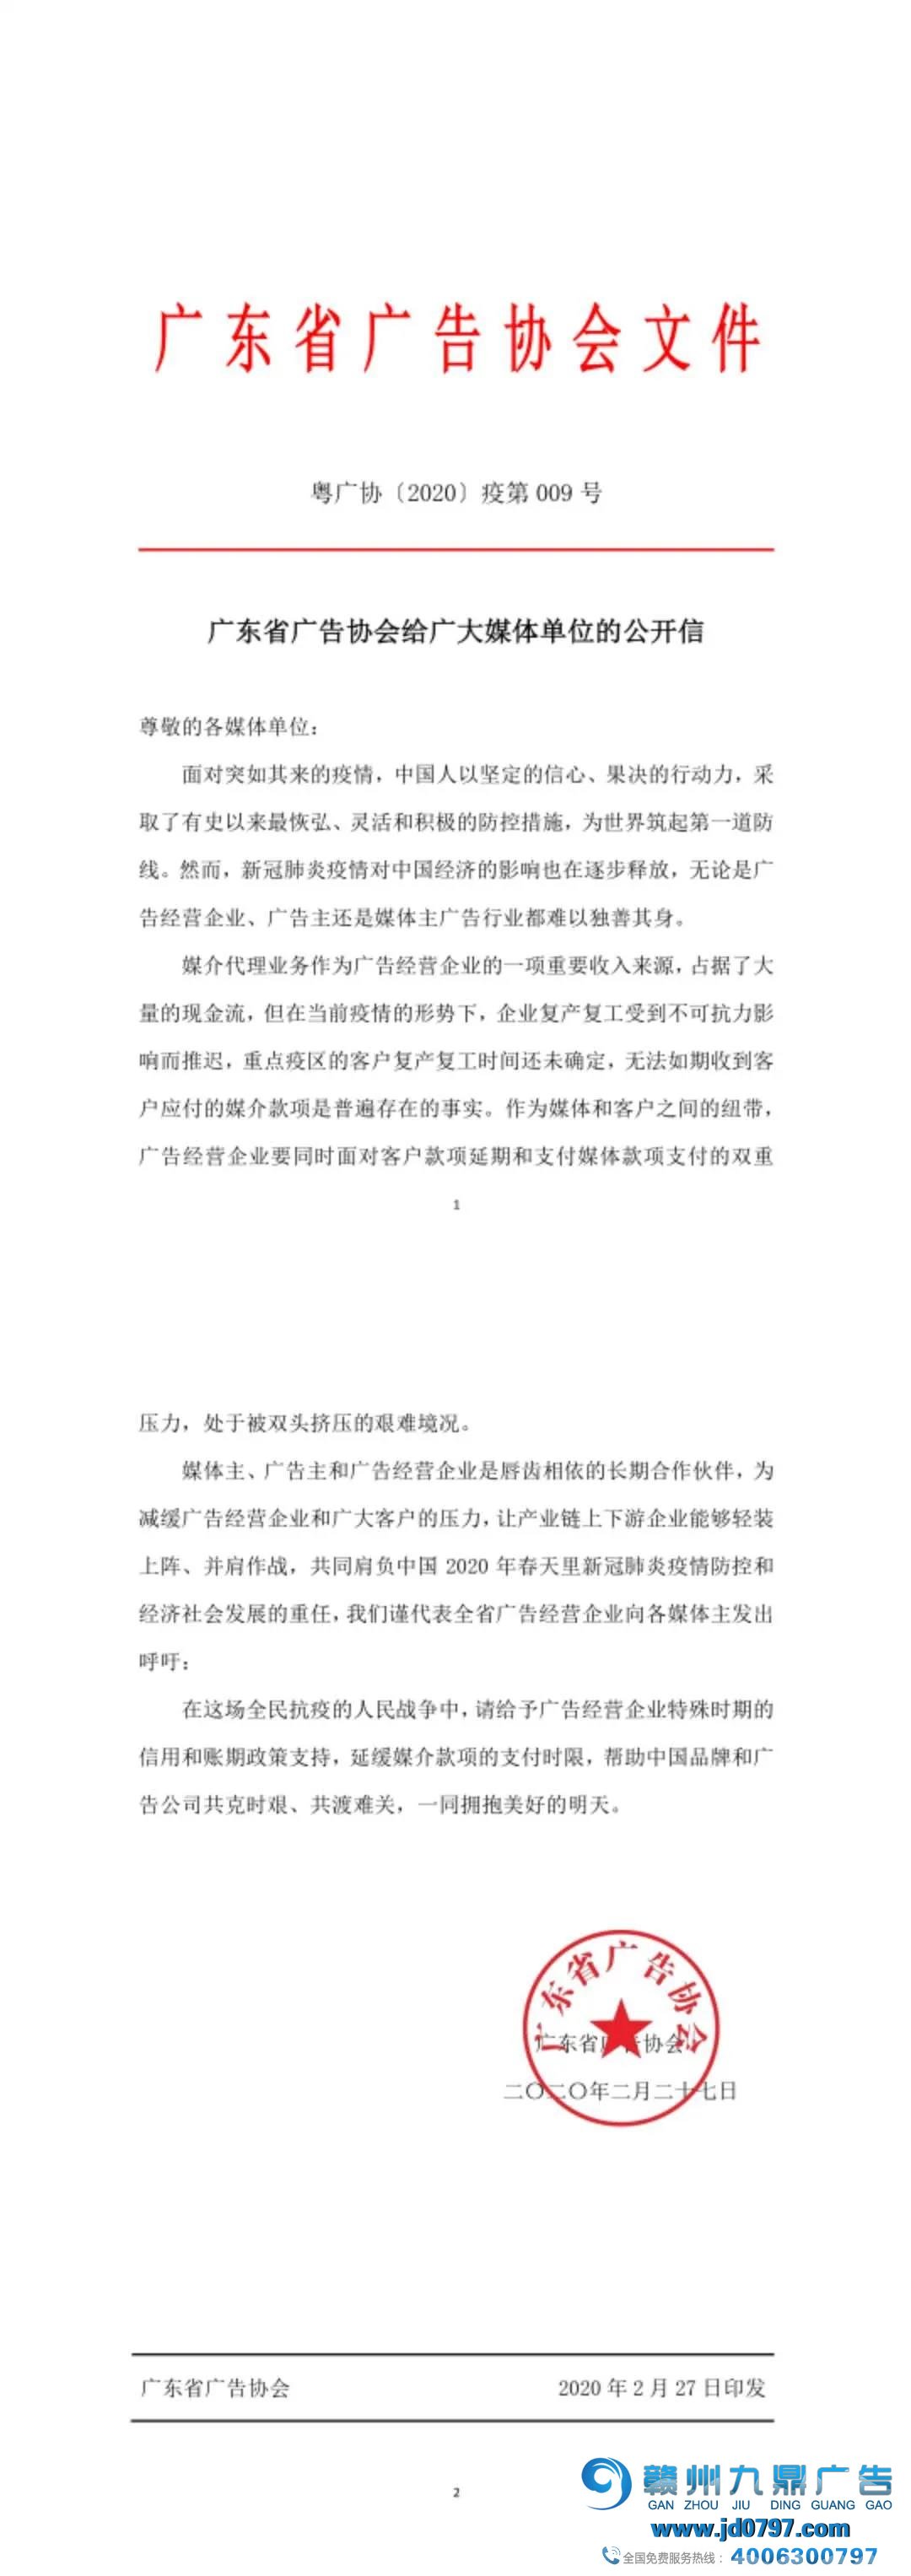 ​广东省广告协会给广大媒体单位的果然信